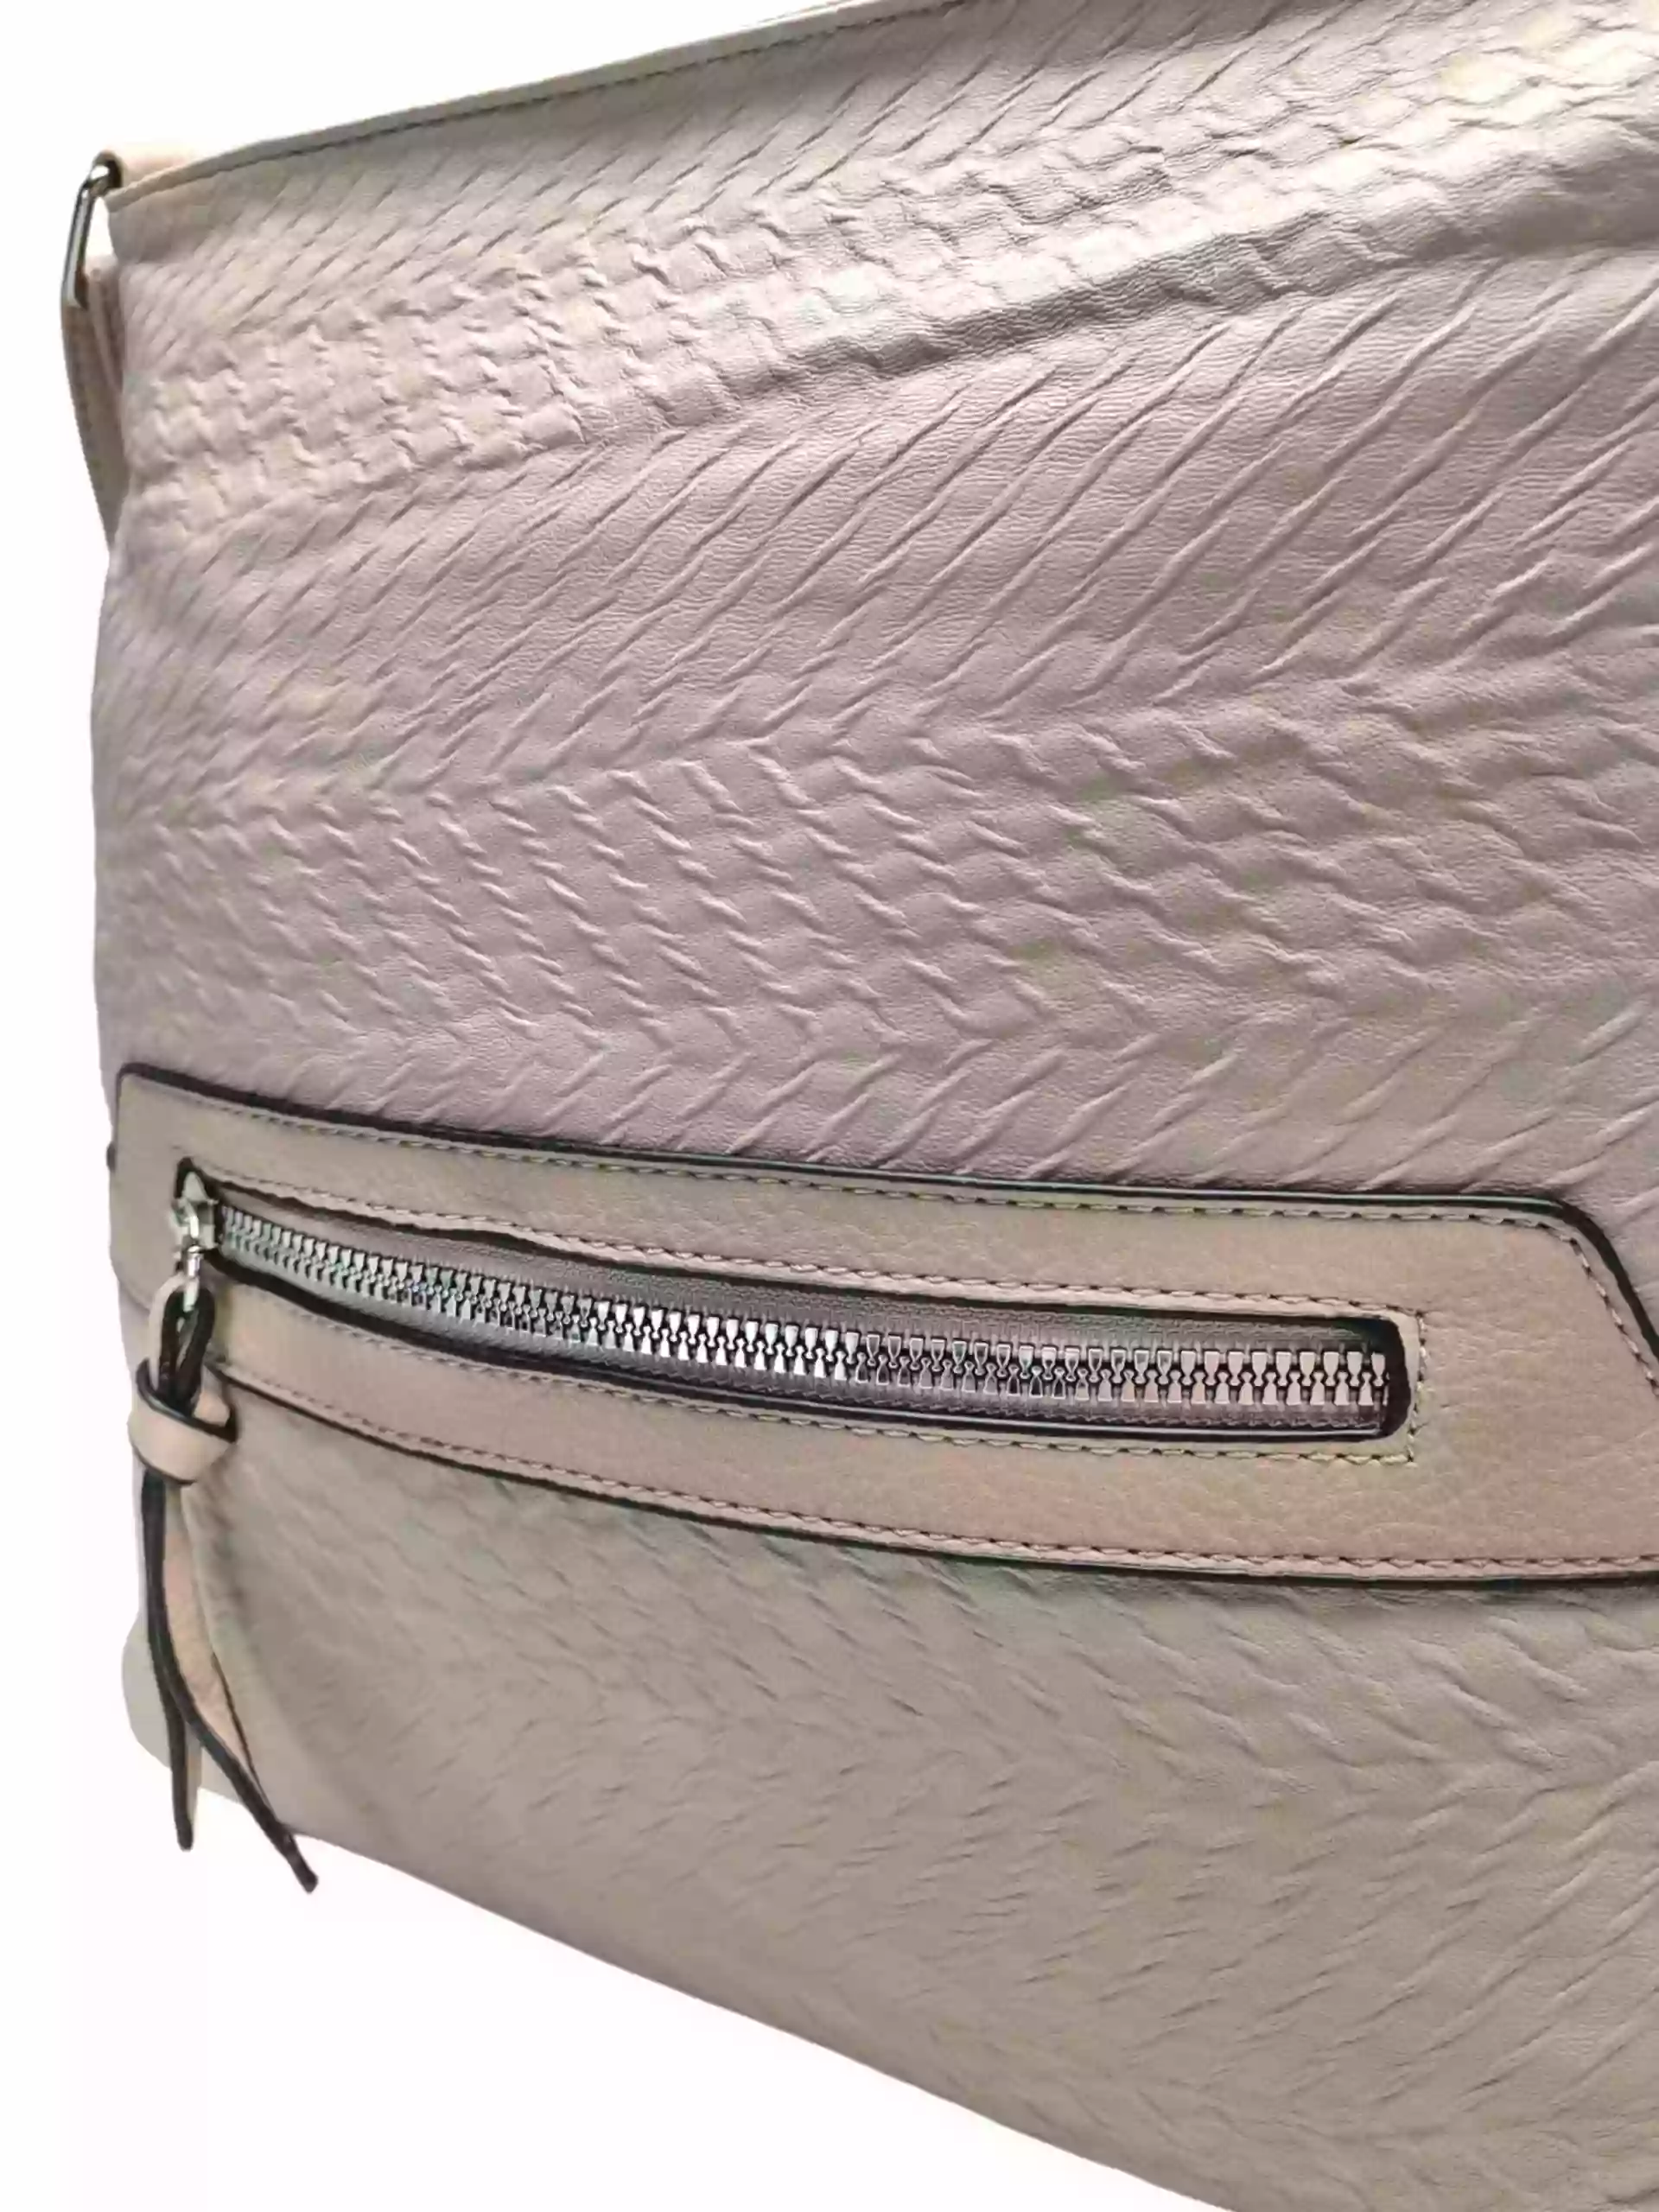 Béžová crossbody kabelka s kapsou, Tapple, H20431, detail crossbody kabelky